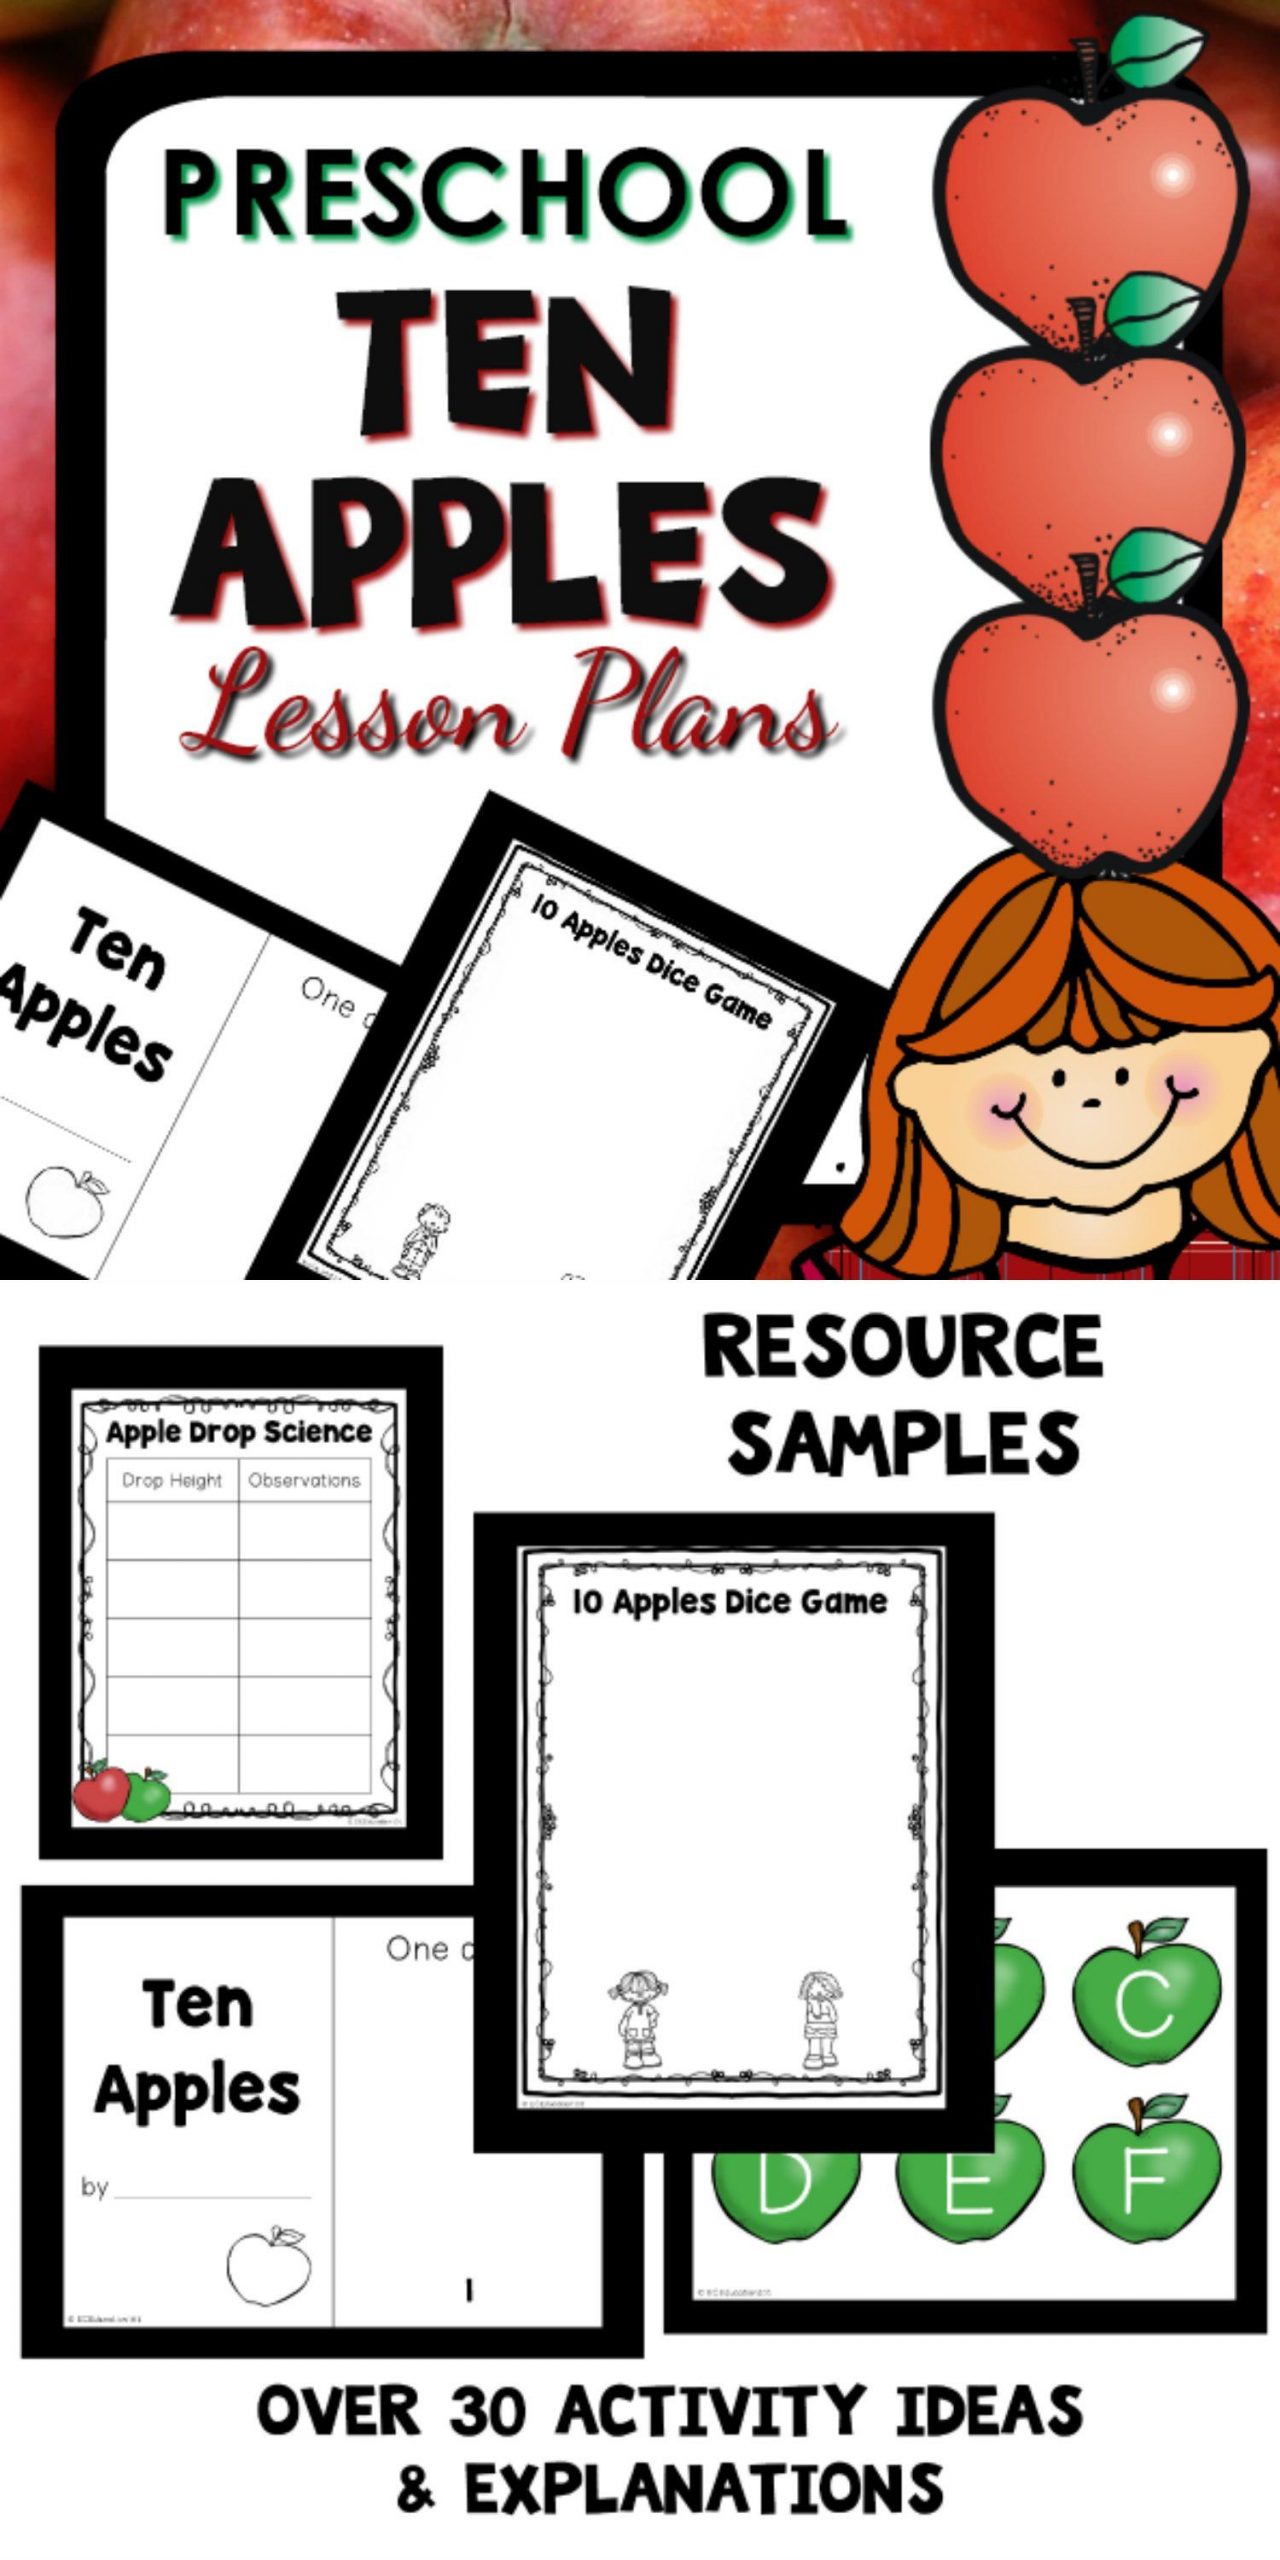 Apple Lesson Plans for Preschool Ten Apples theme Preschool Classroom Lesson Plans